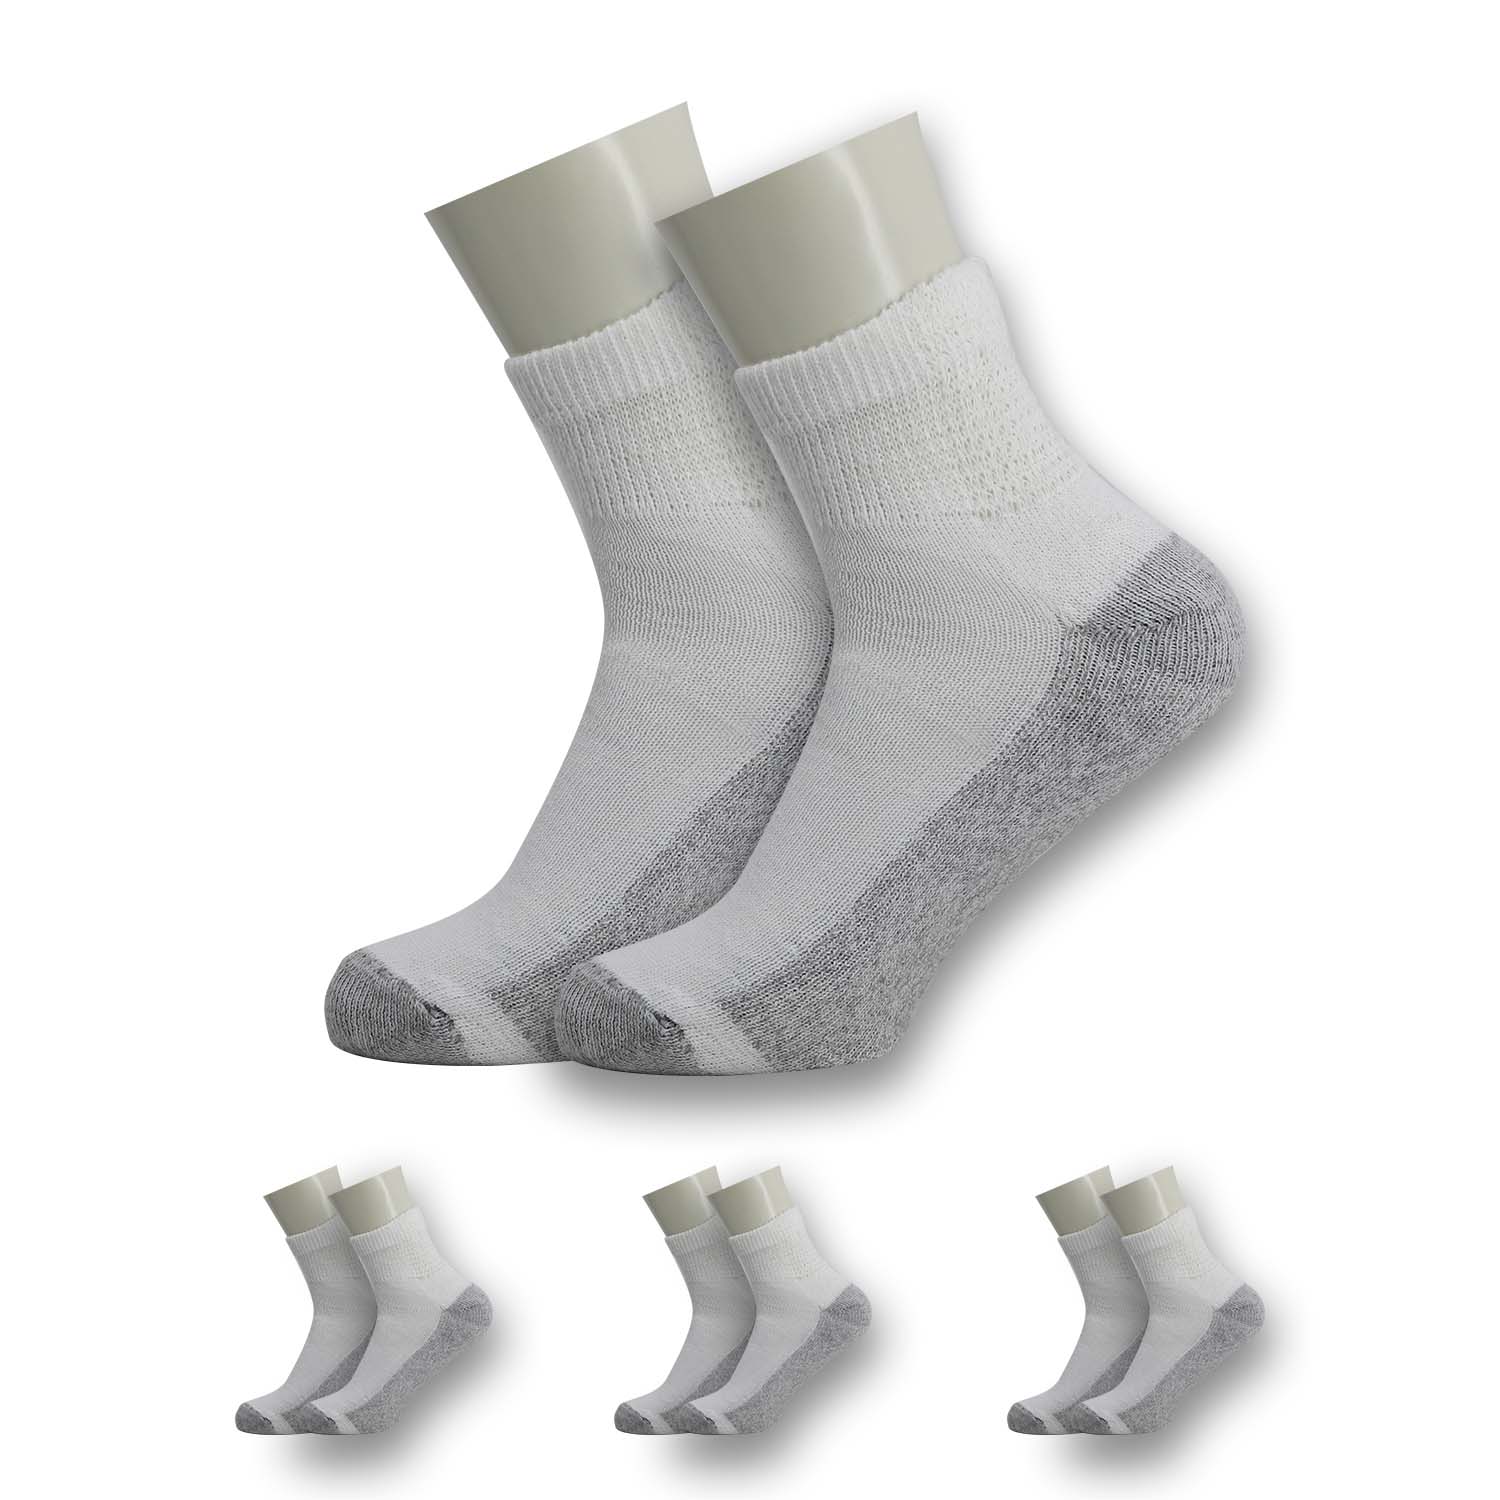 Bulk Socks for Everyday Wholesale Prices - Ankle, Crew, Dress & More – Bulk  Socks Wholesale